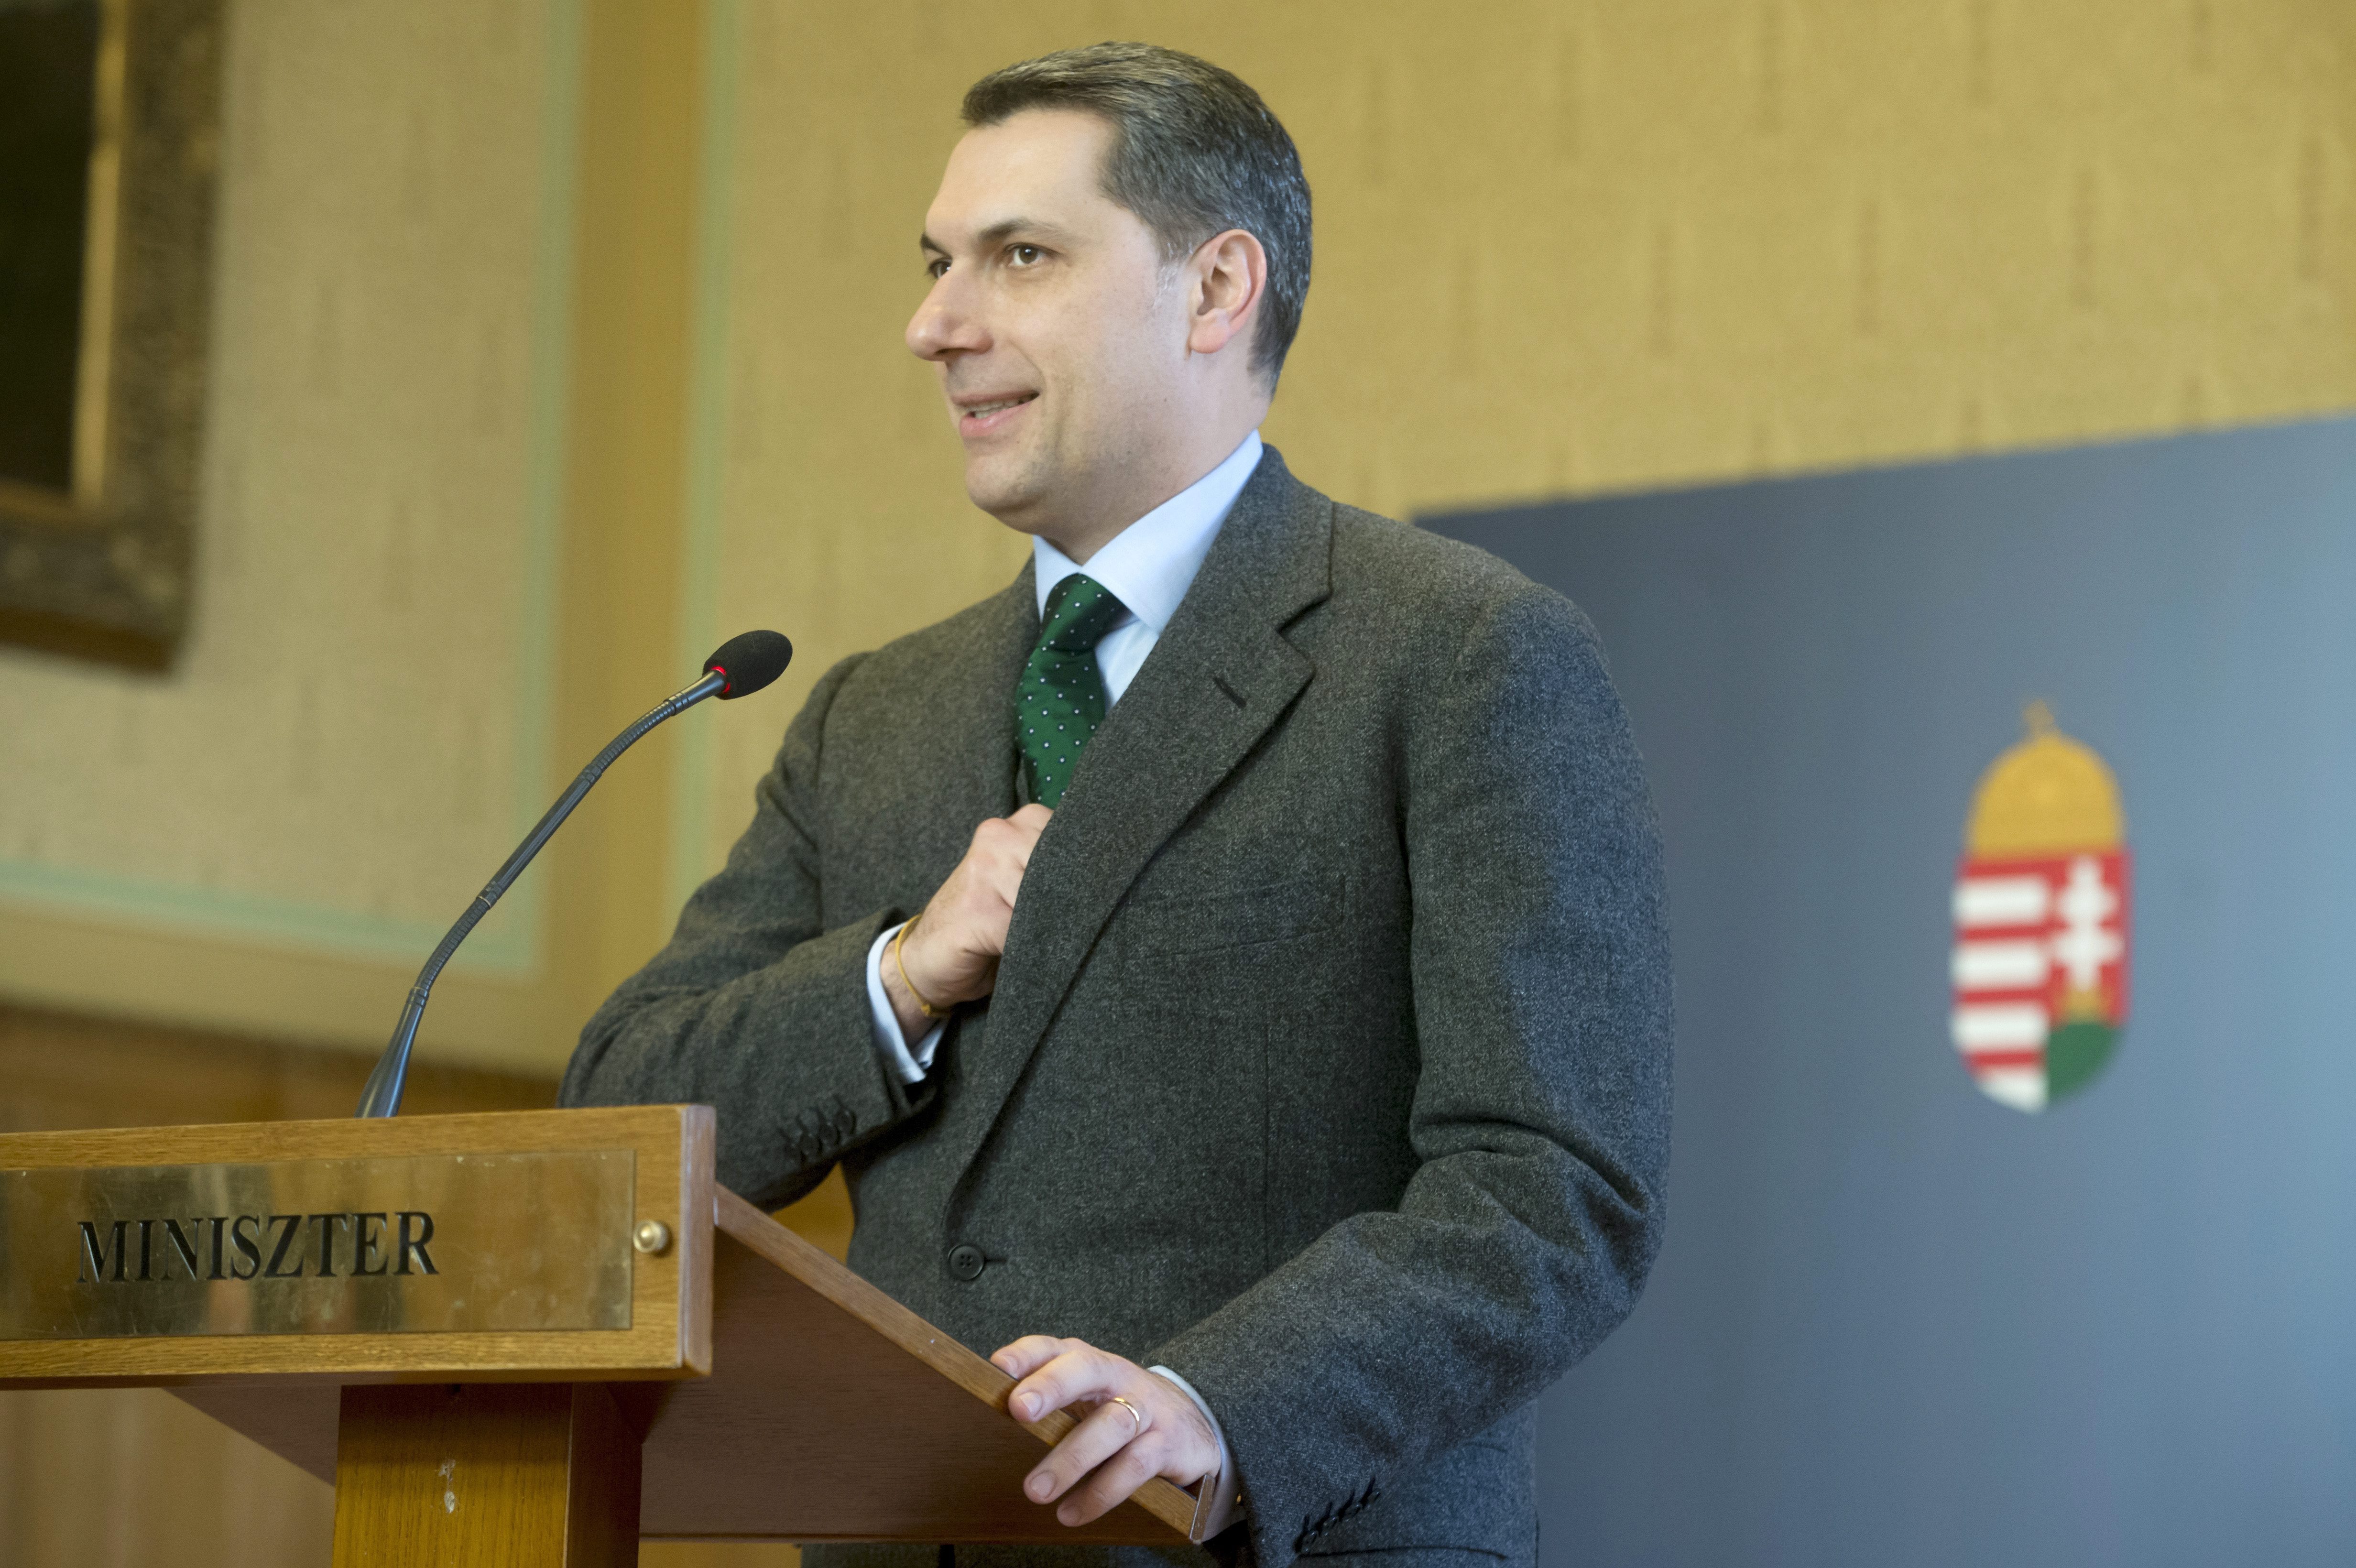 Lázár finomított az Orbán vétójáról szóló történeten